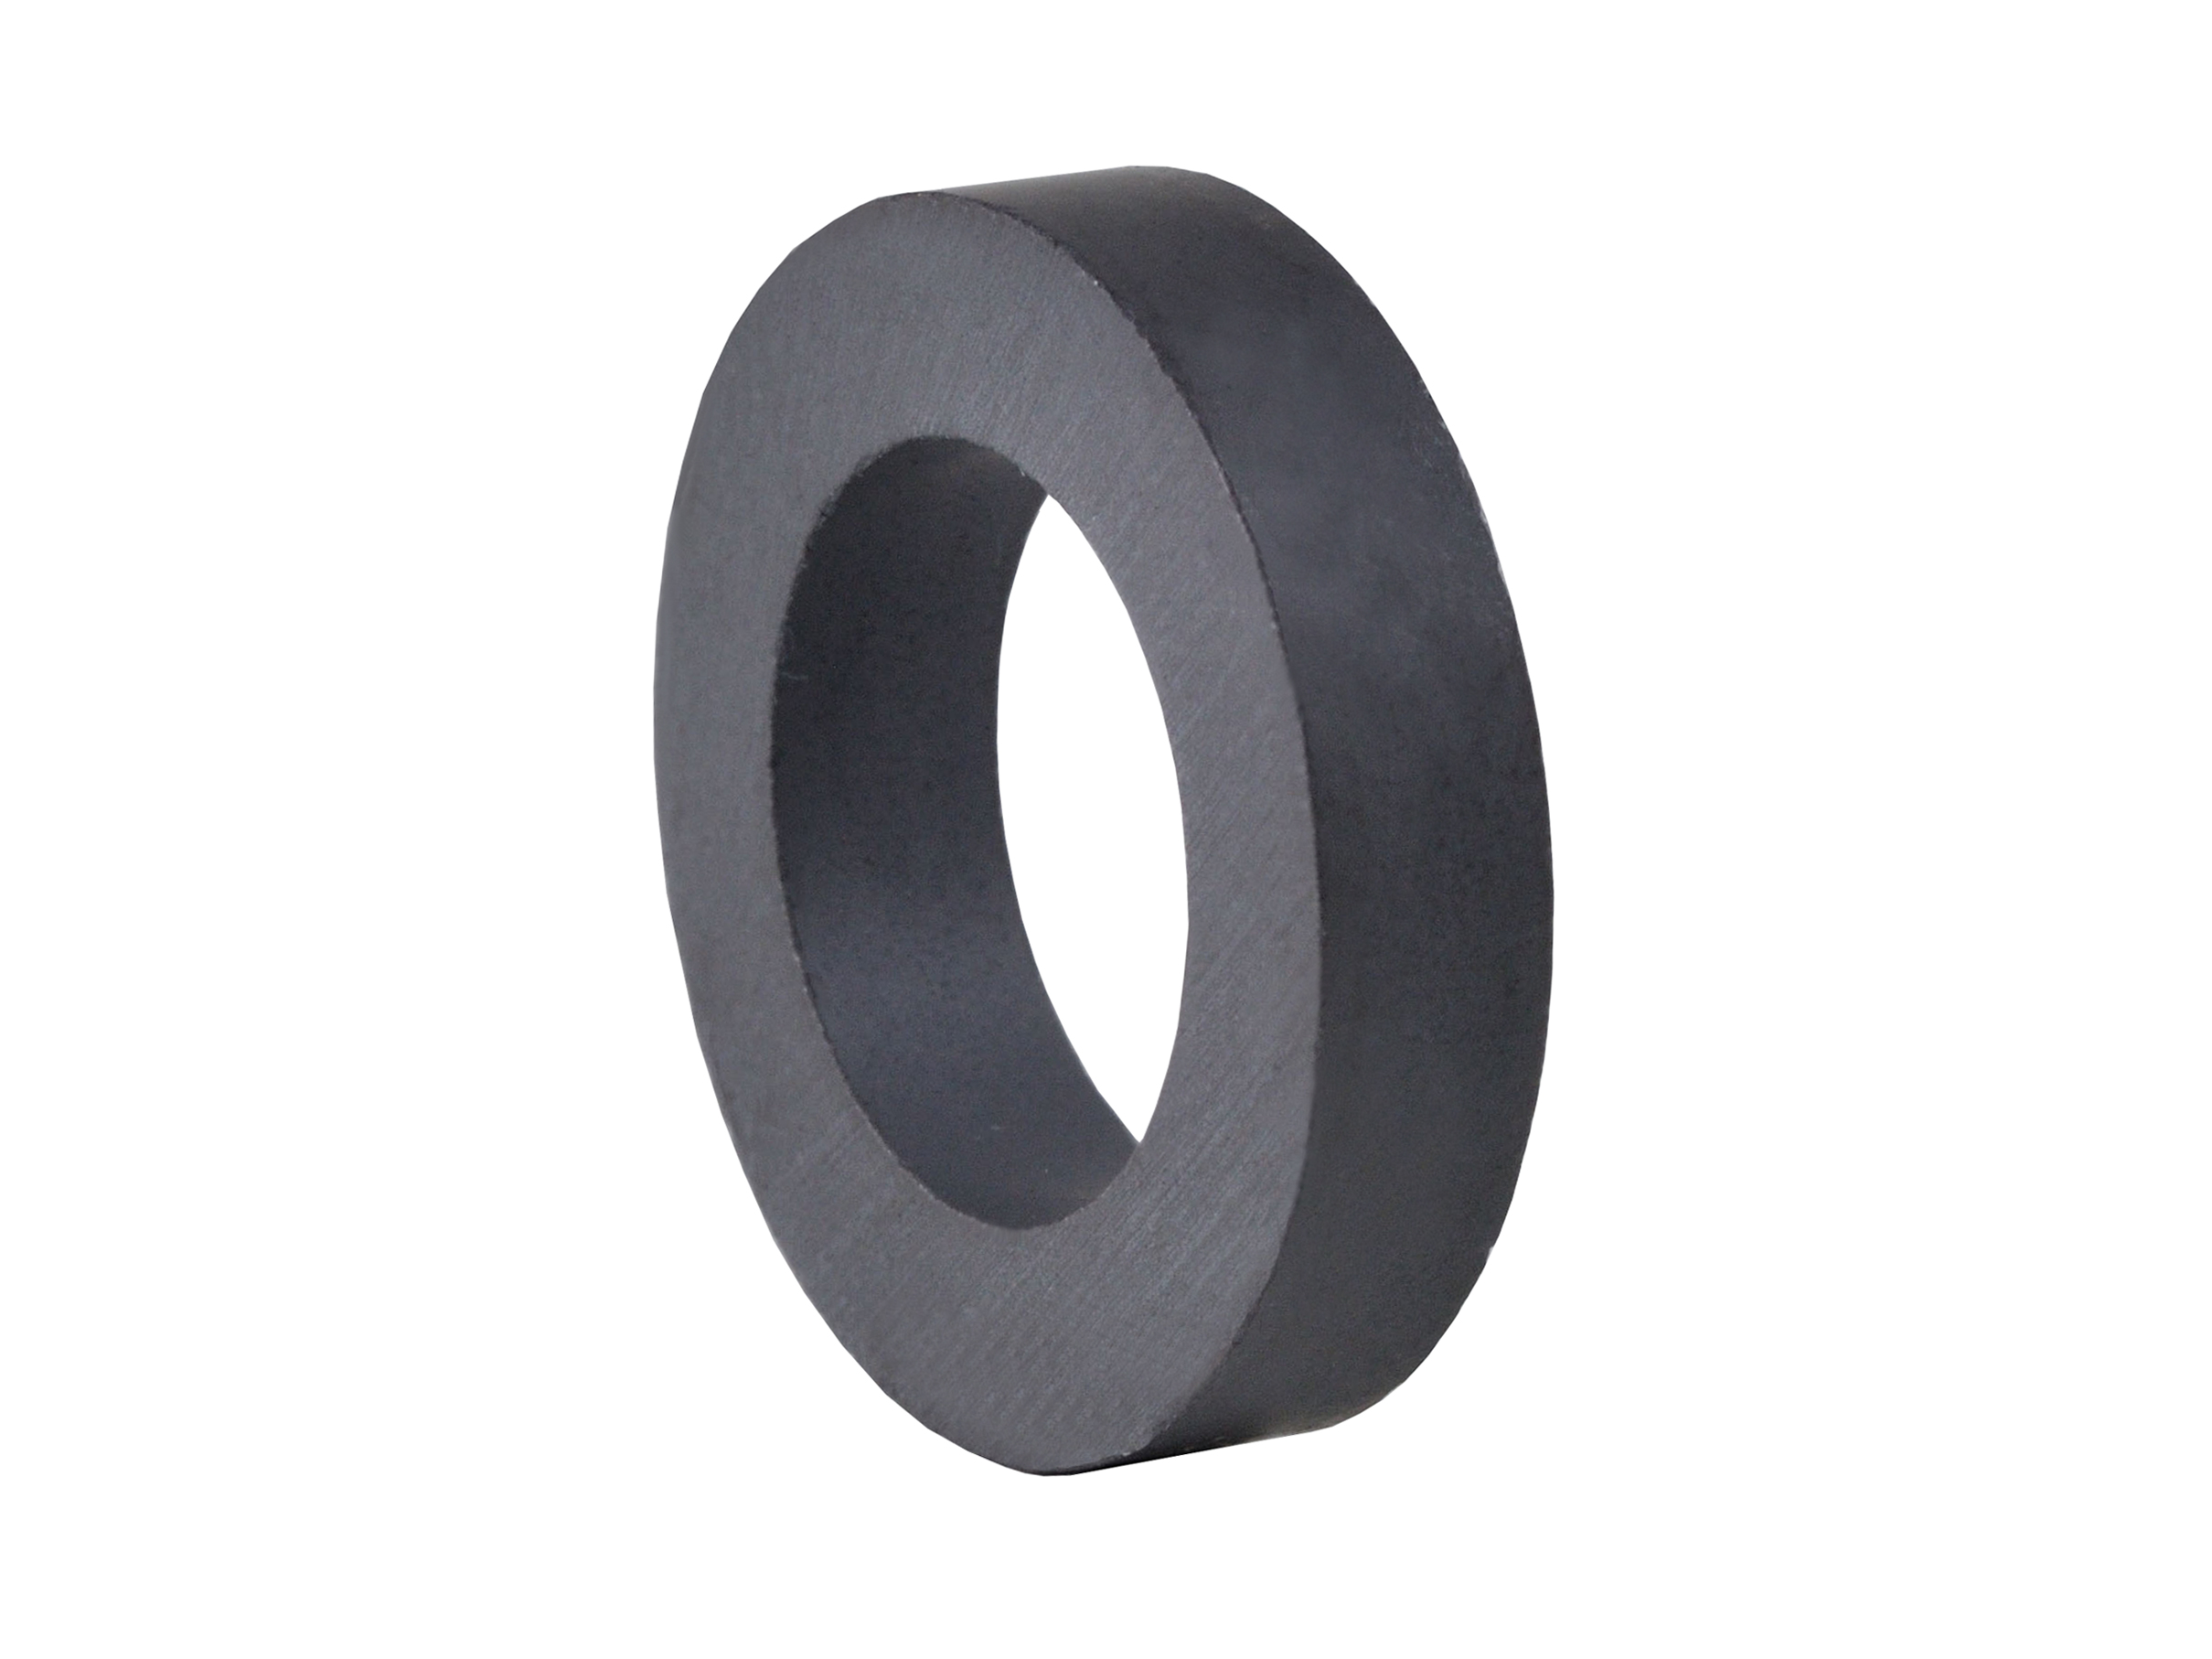 Ring‑Shaped Ferrite Magnet (FRR05) 